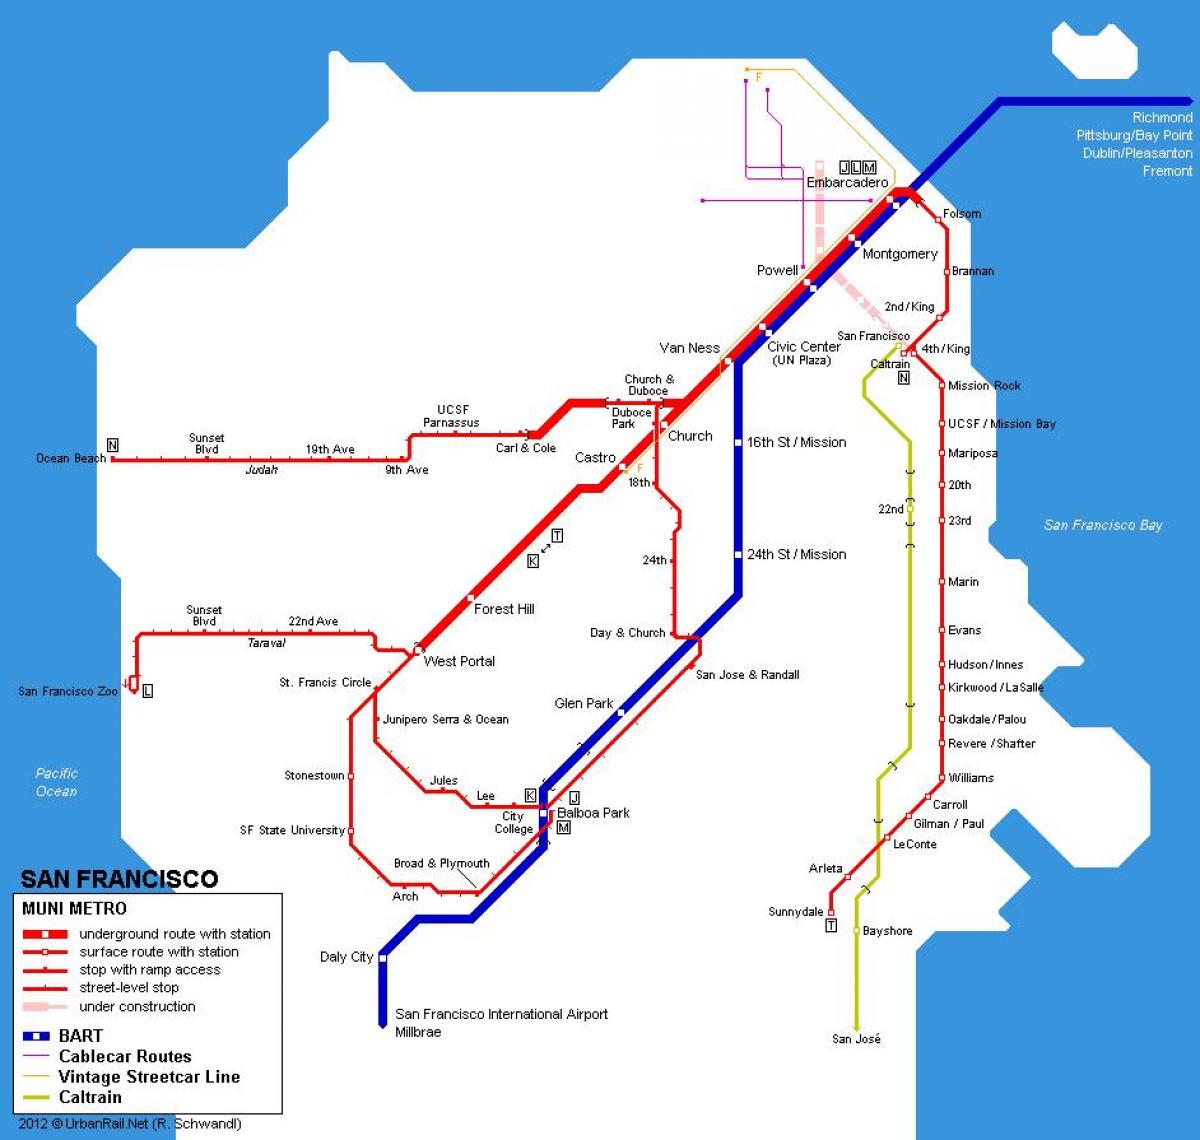 muni ٹرین کا نقشہ